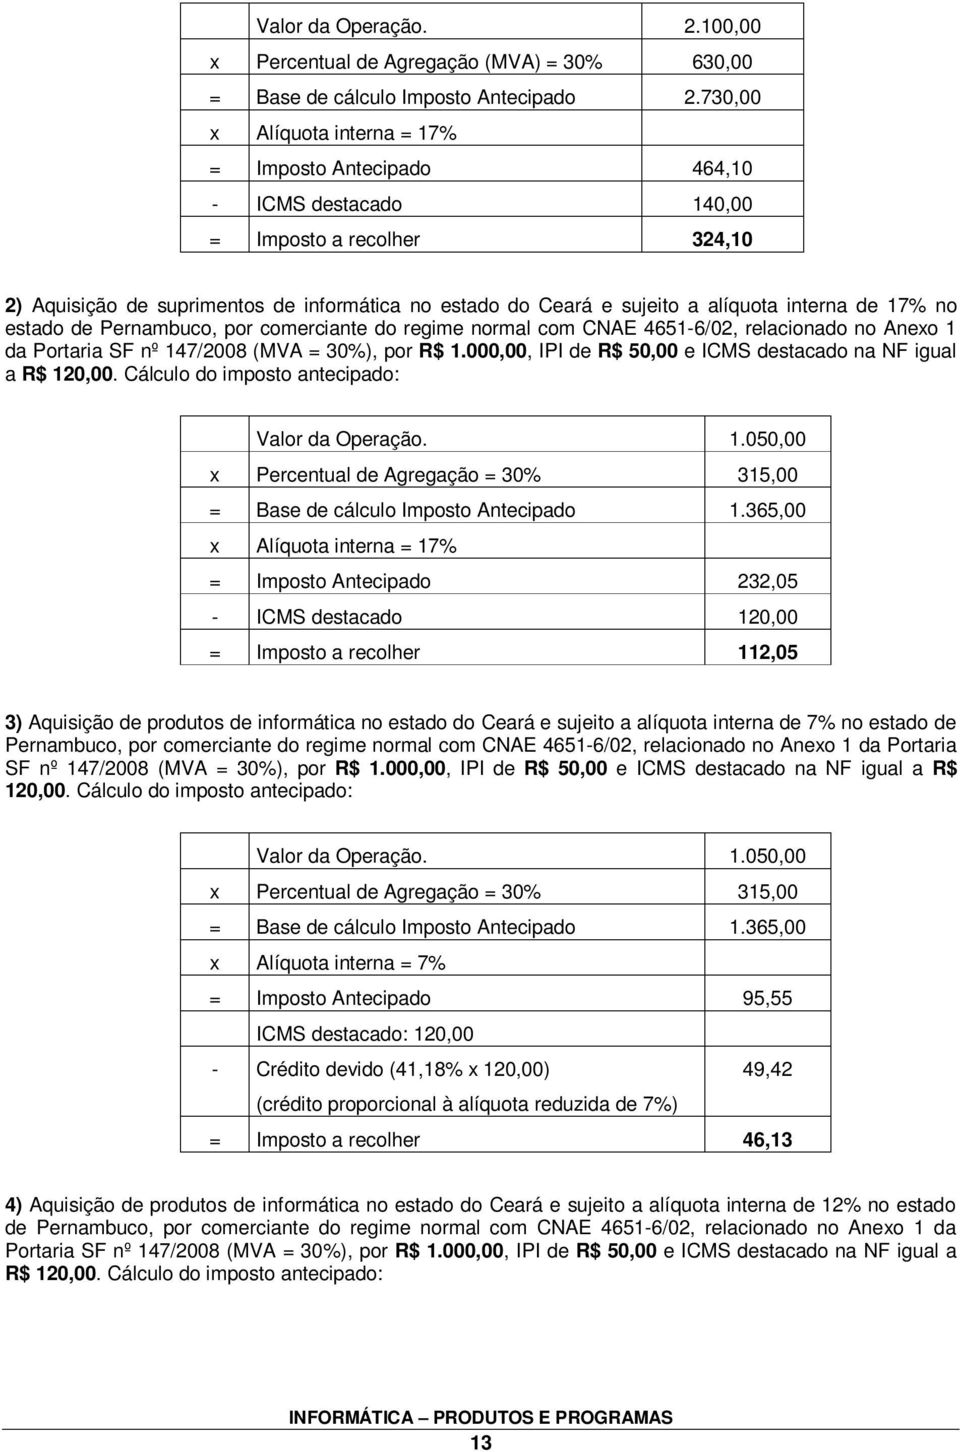 interna de 17% no estado de Pernambuco, por comerciante do regime normal com CNAE 4651-6/02, relacionado no Anexo 1 da Portaria SF nº 147/2008 (MVA = 30%), por R$ 1.